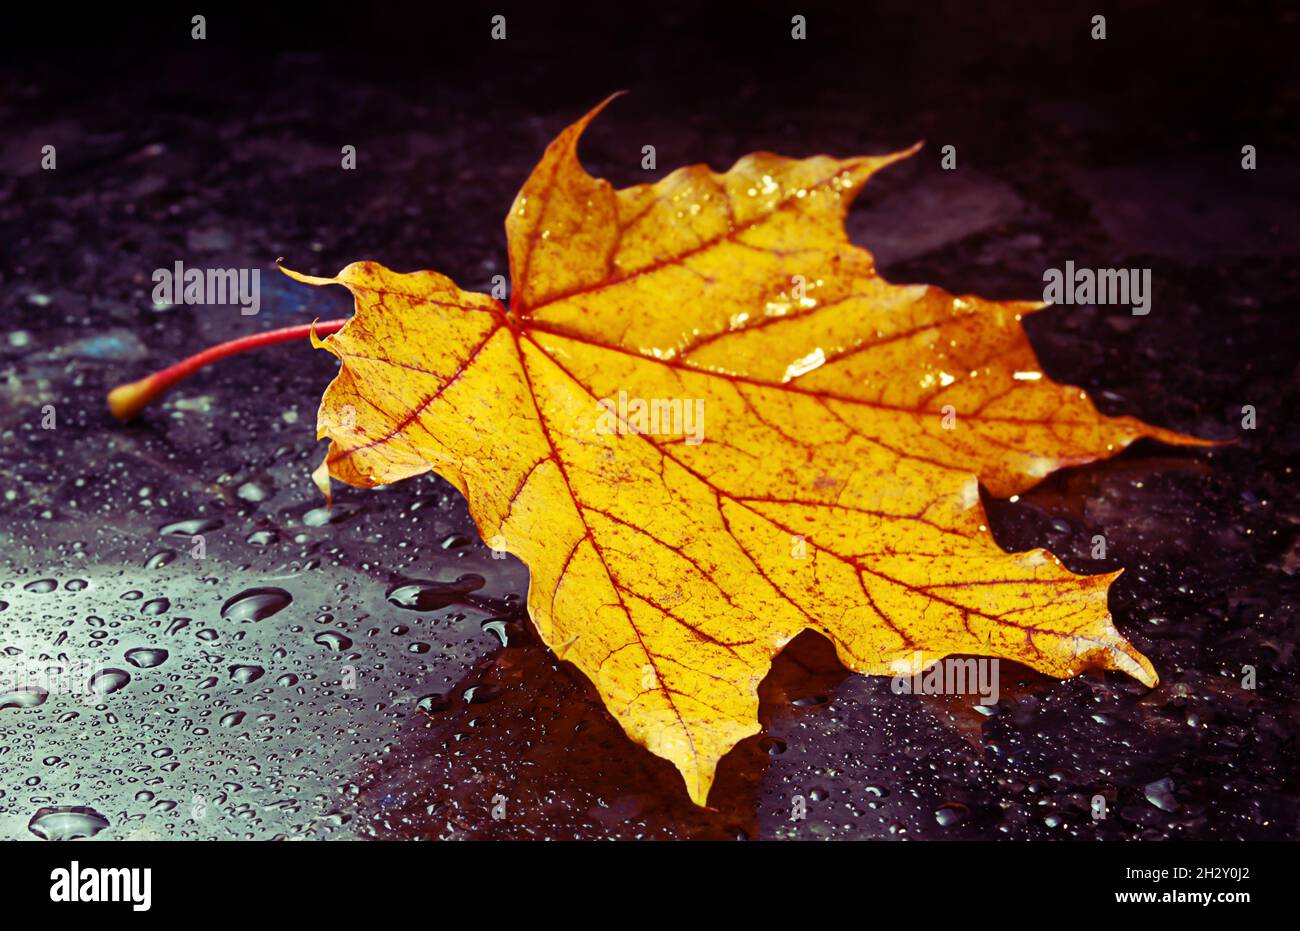 Herbstlich gelbes Blatt liegt auf der dunkel polierten Marmoroberfläche mit Wassertropfen Stockfoto